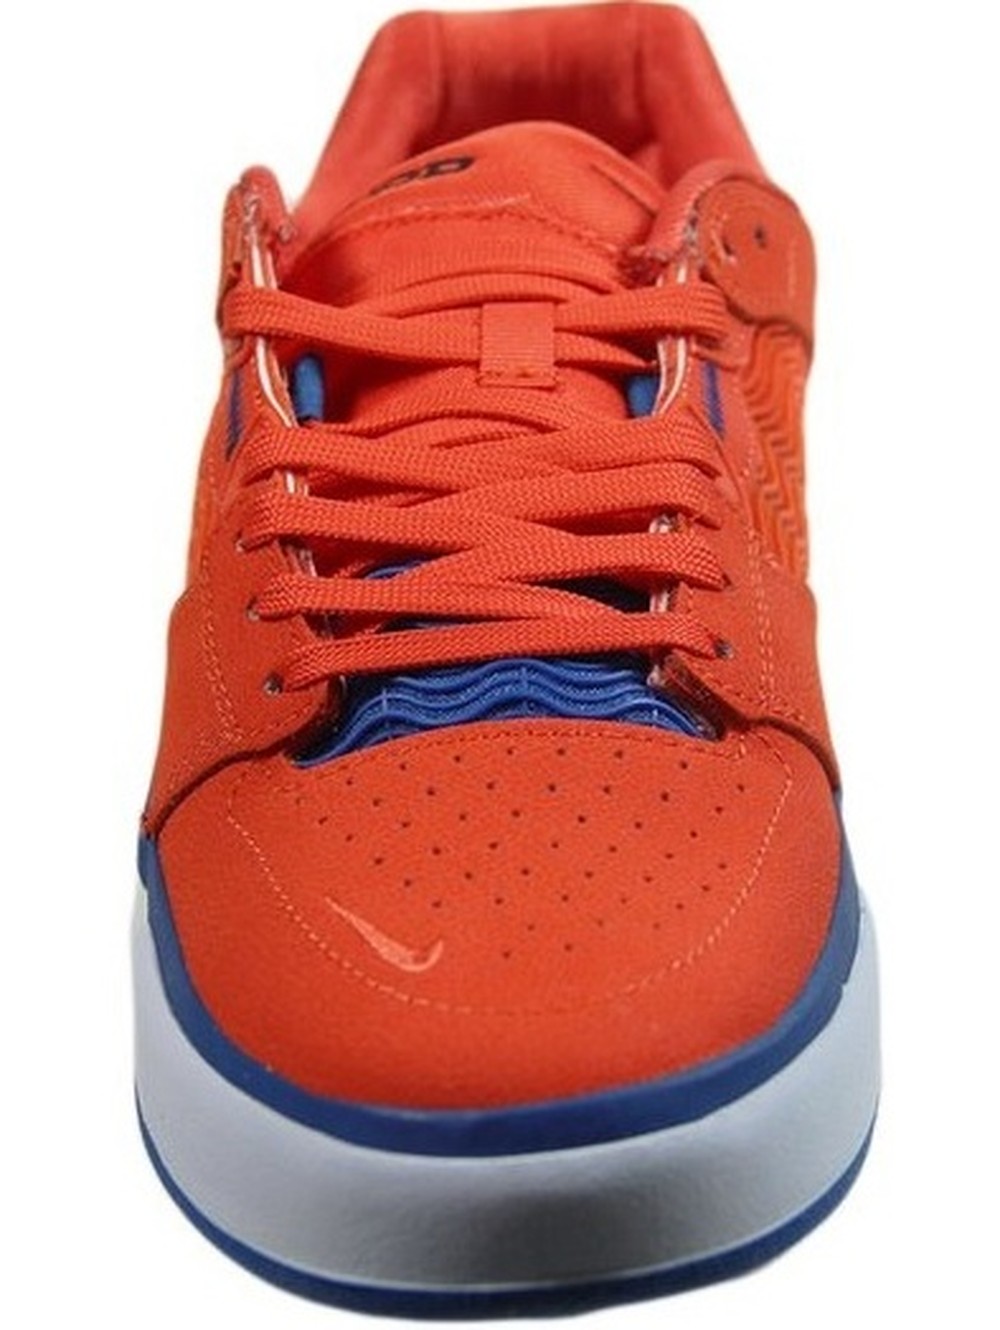 Tênis Nike SB Ishod Premium Laranja/Azul